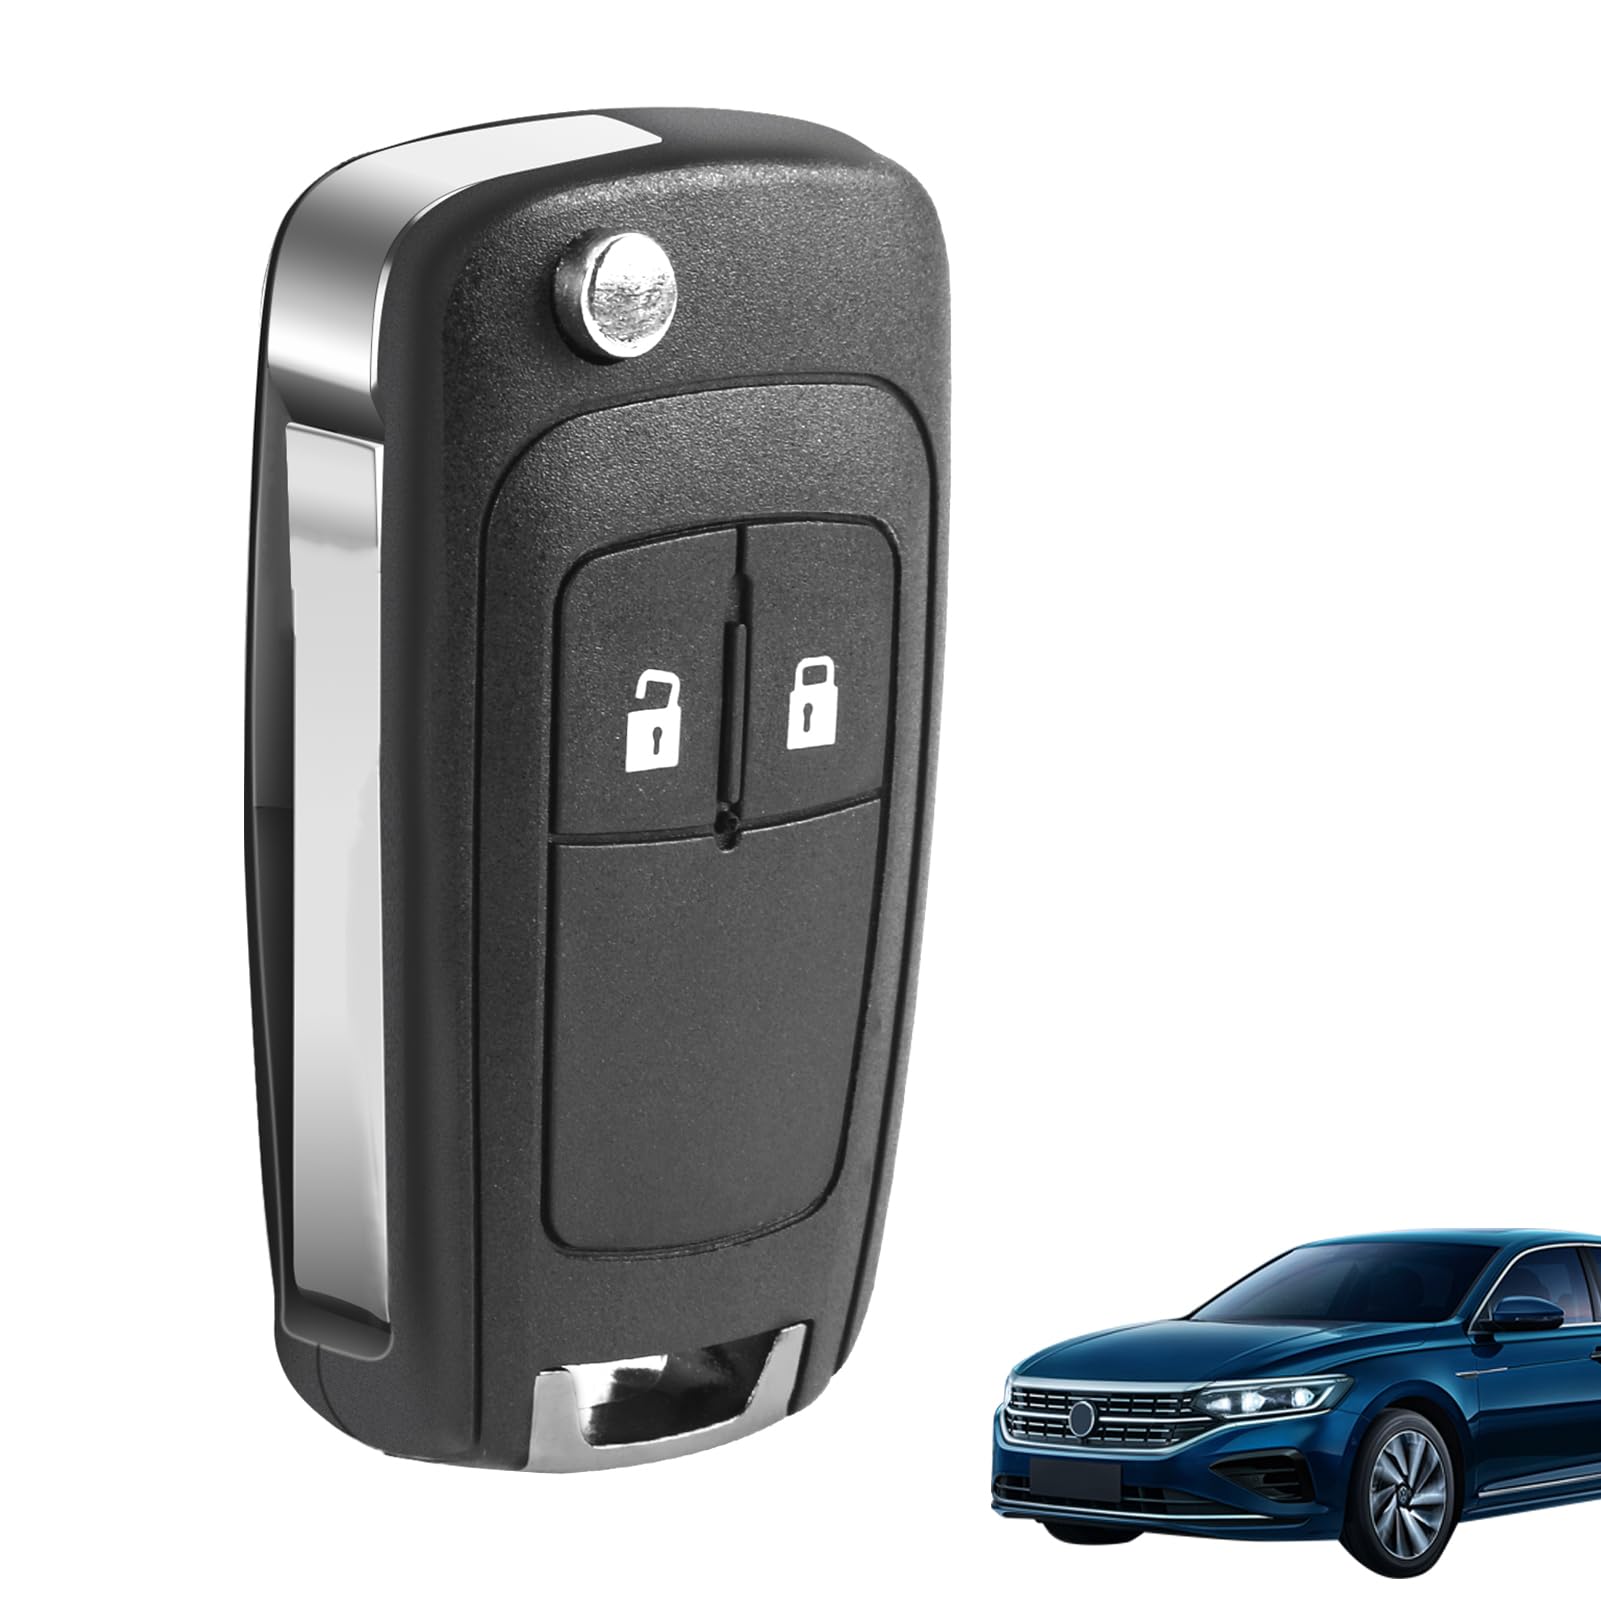 2 Tasten Autoschlüssel Gehäuse der Fernbedienung Auto Schlüssel hülle für Opel Chevrolet, Auto Schlüsselgehäuse, Flip Schlüsselgehäuse Shell, Autoschlüssel Cover Case von LANAFAY